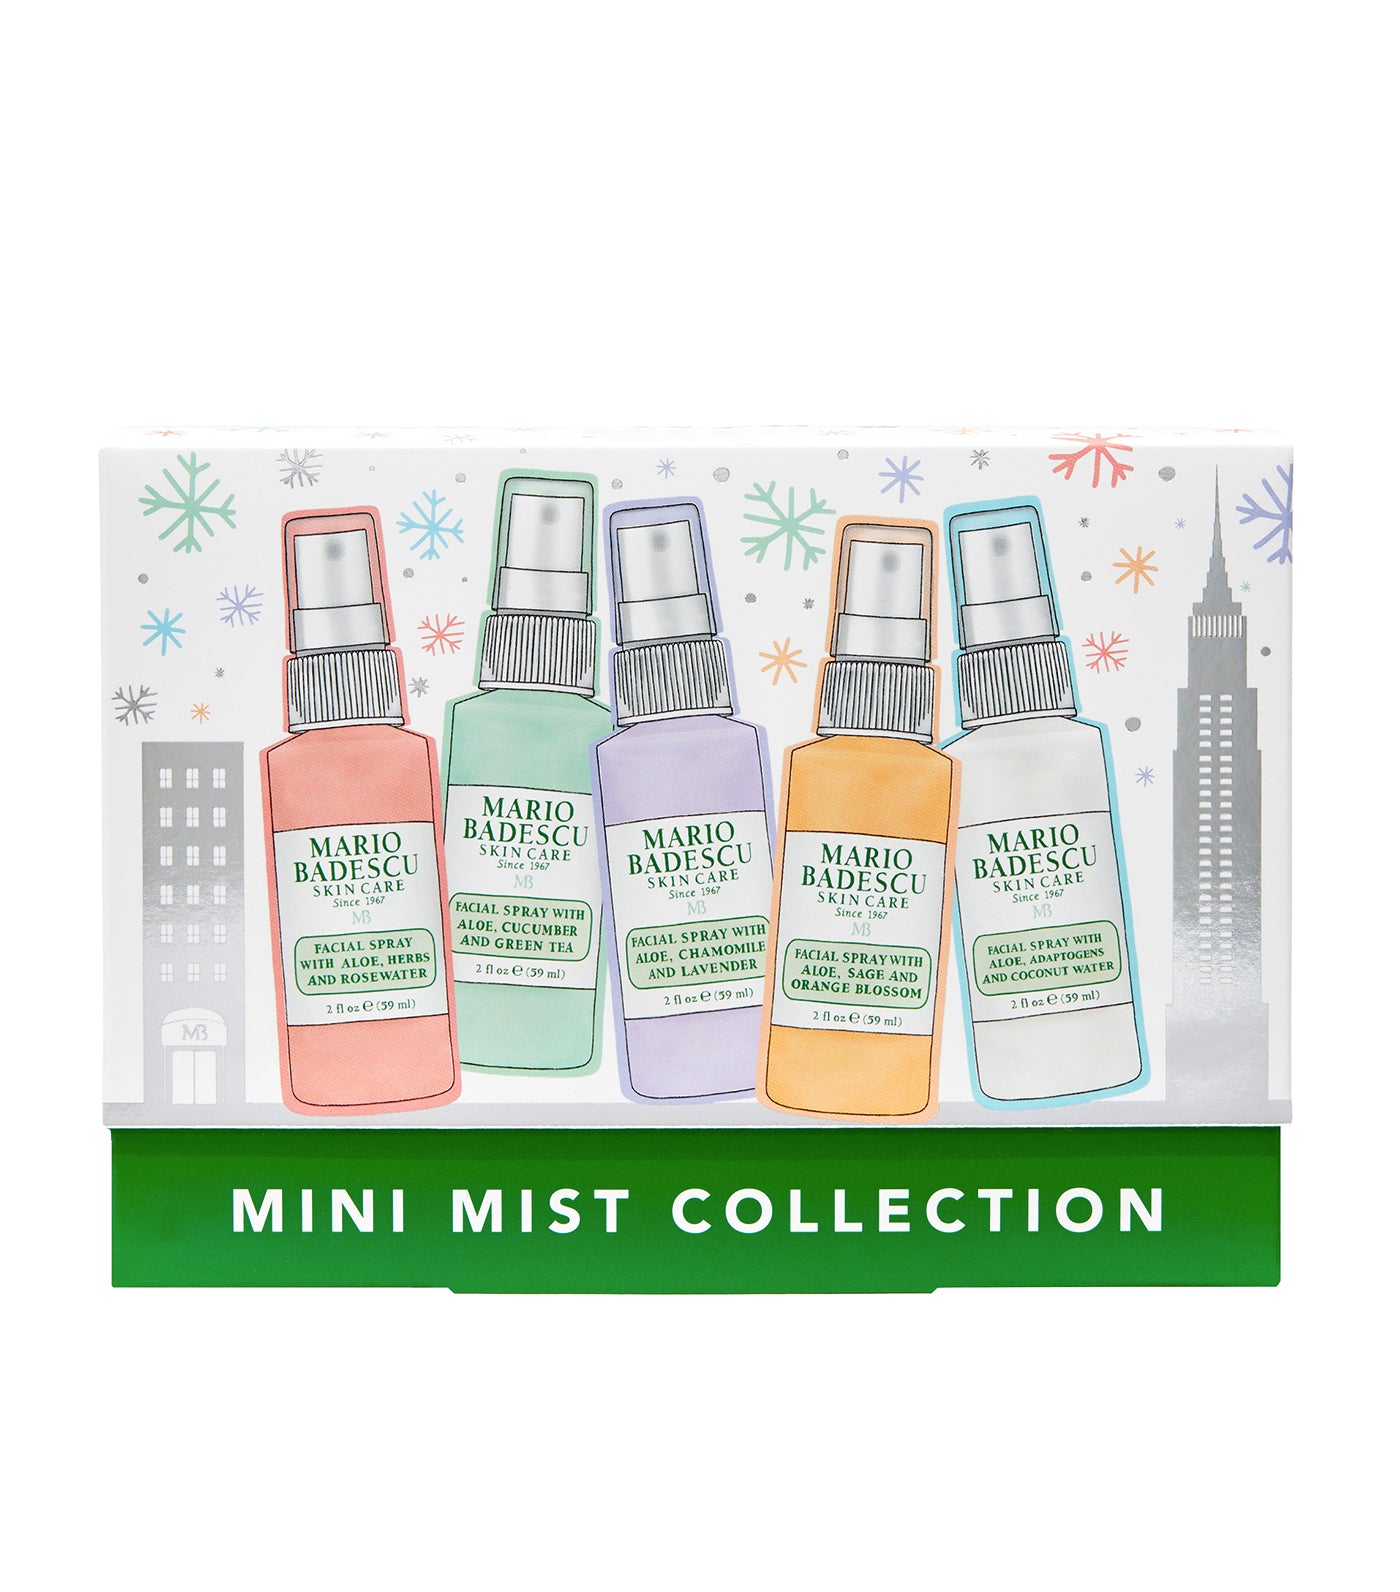 Mini Mist Collection